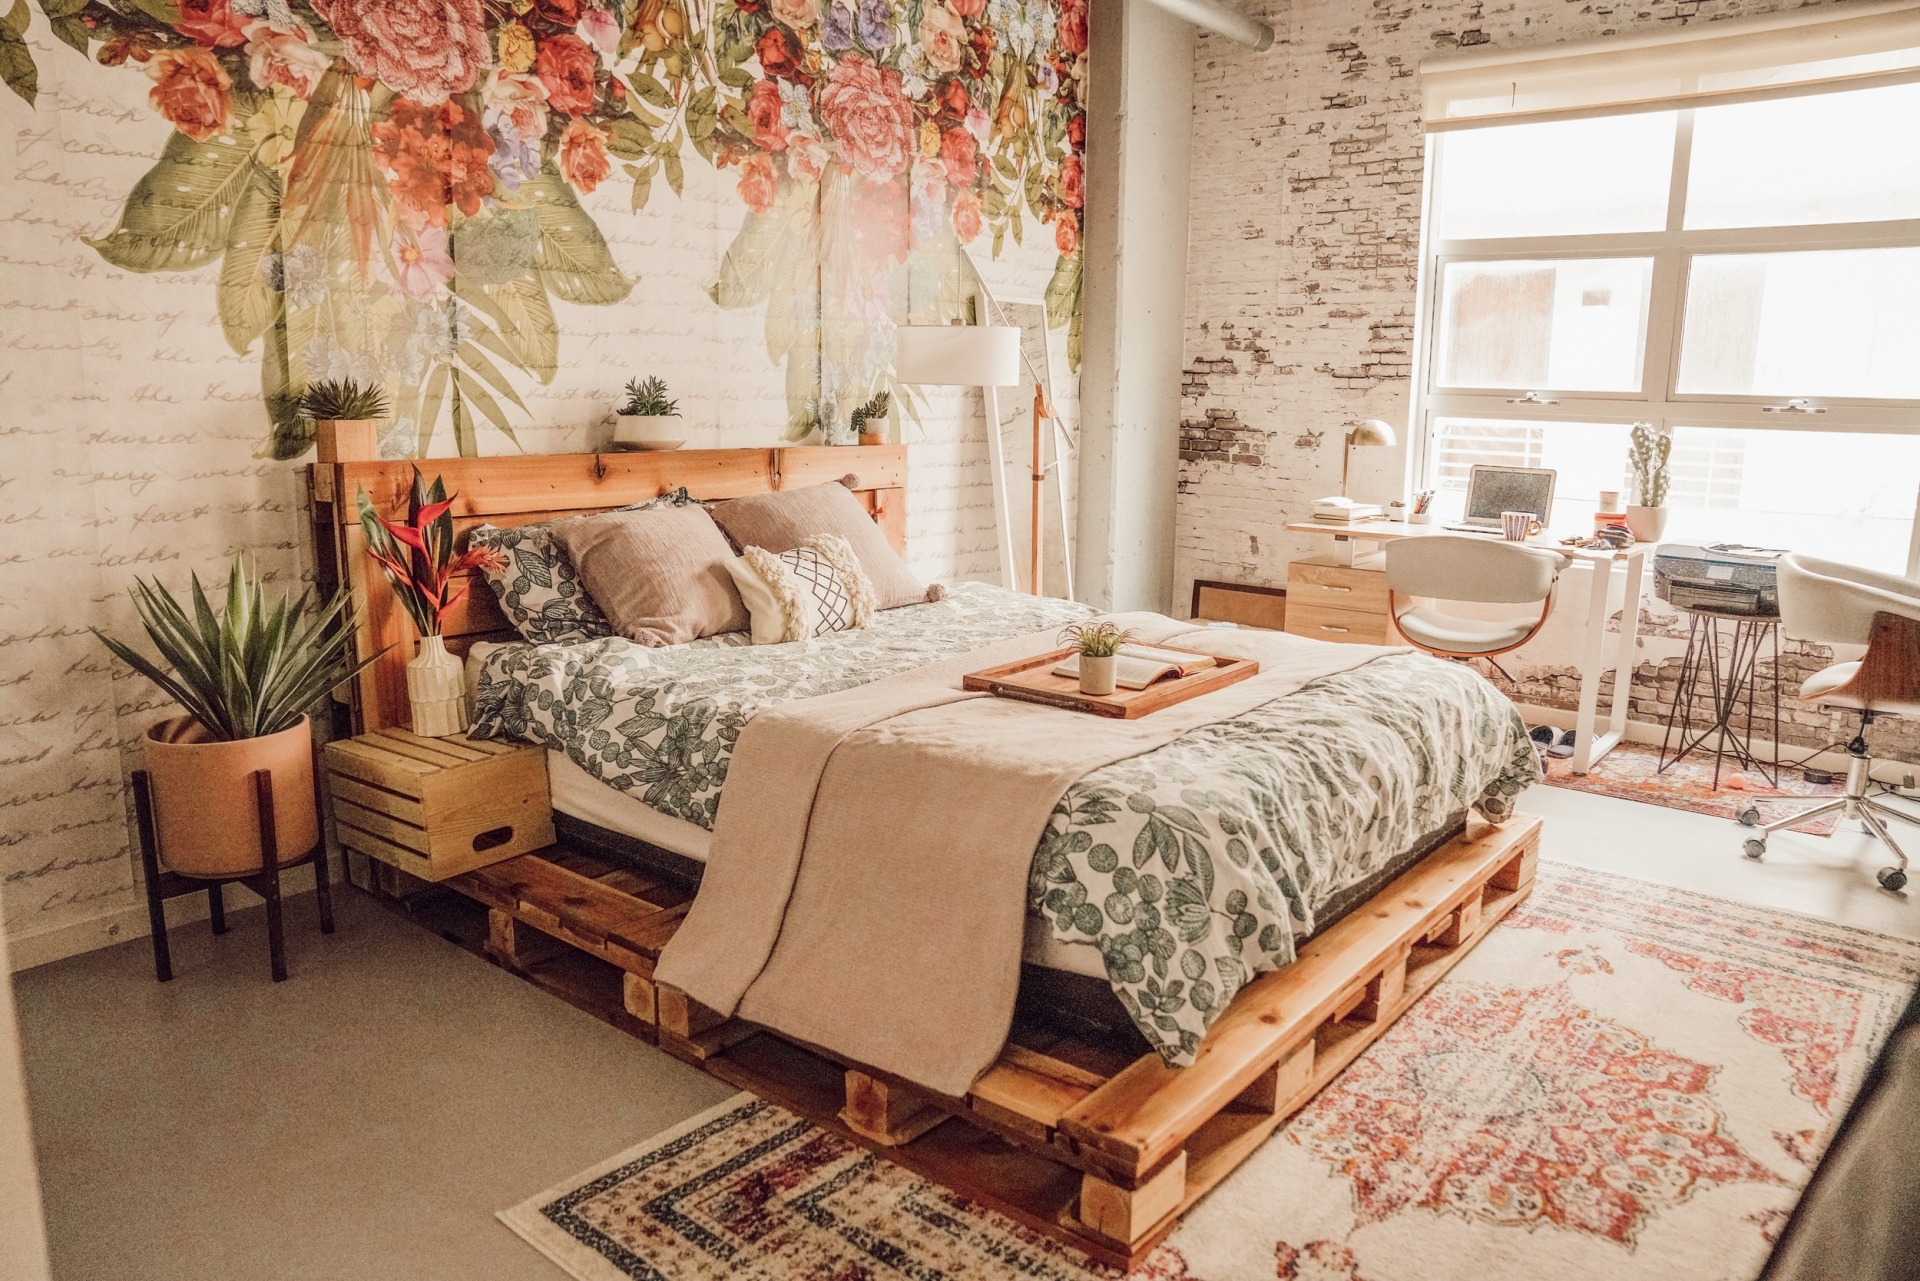 Đẹp nhẹ nhàng và lãng mạn là những gì có thể miêu tả về phòng ngủ này. Chiếc giường gỗ pallet mộc mạc với phần đầu giường được trang trí bởi những chậu cảnh tươi xanh kết hợp giấy dán tường hoa lá như mang cả khu vườn nhỏ vào phòng.